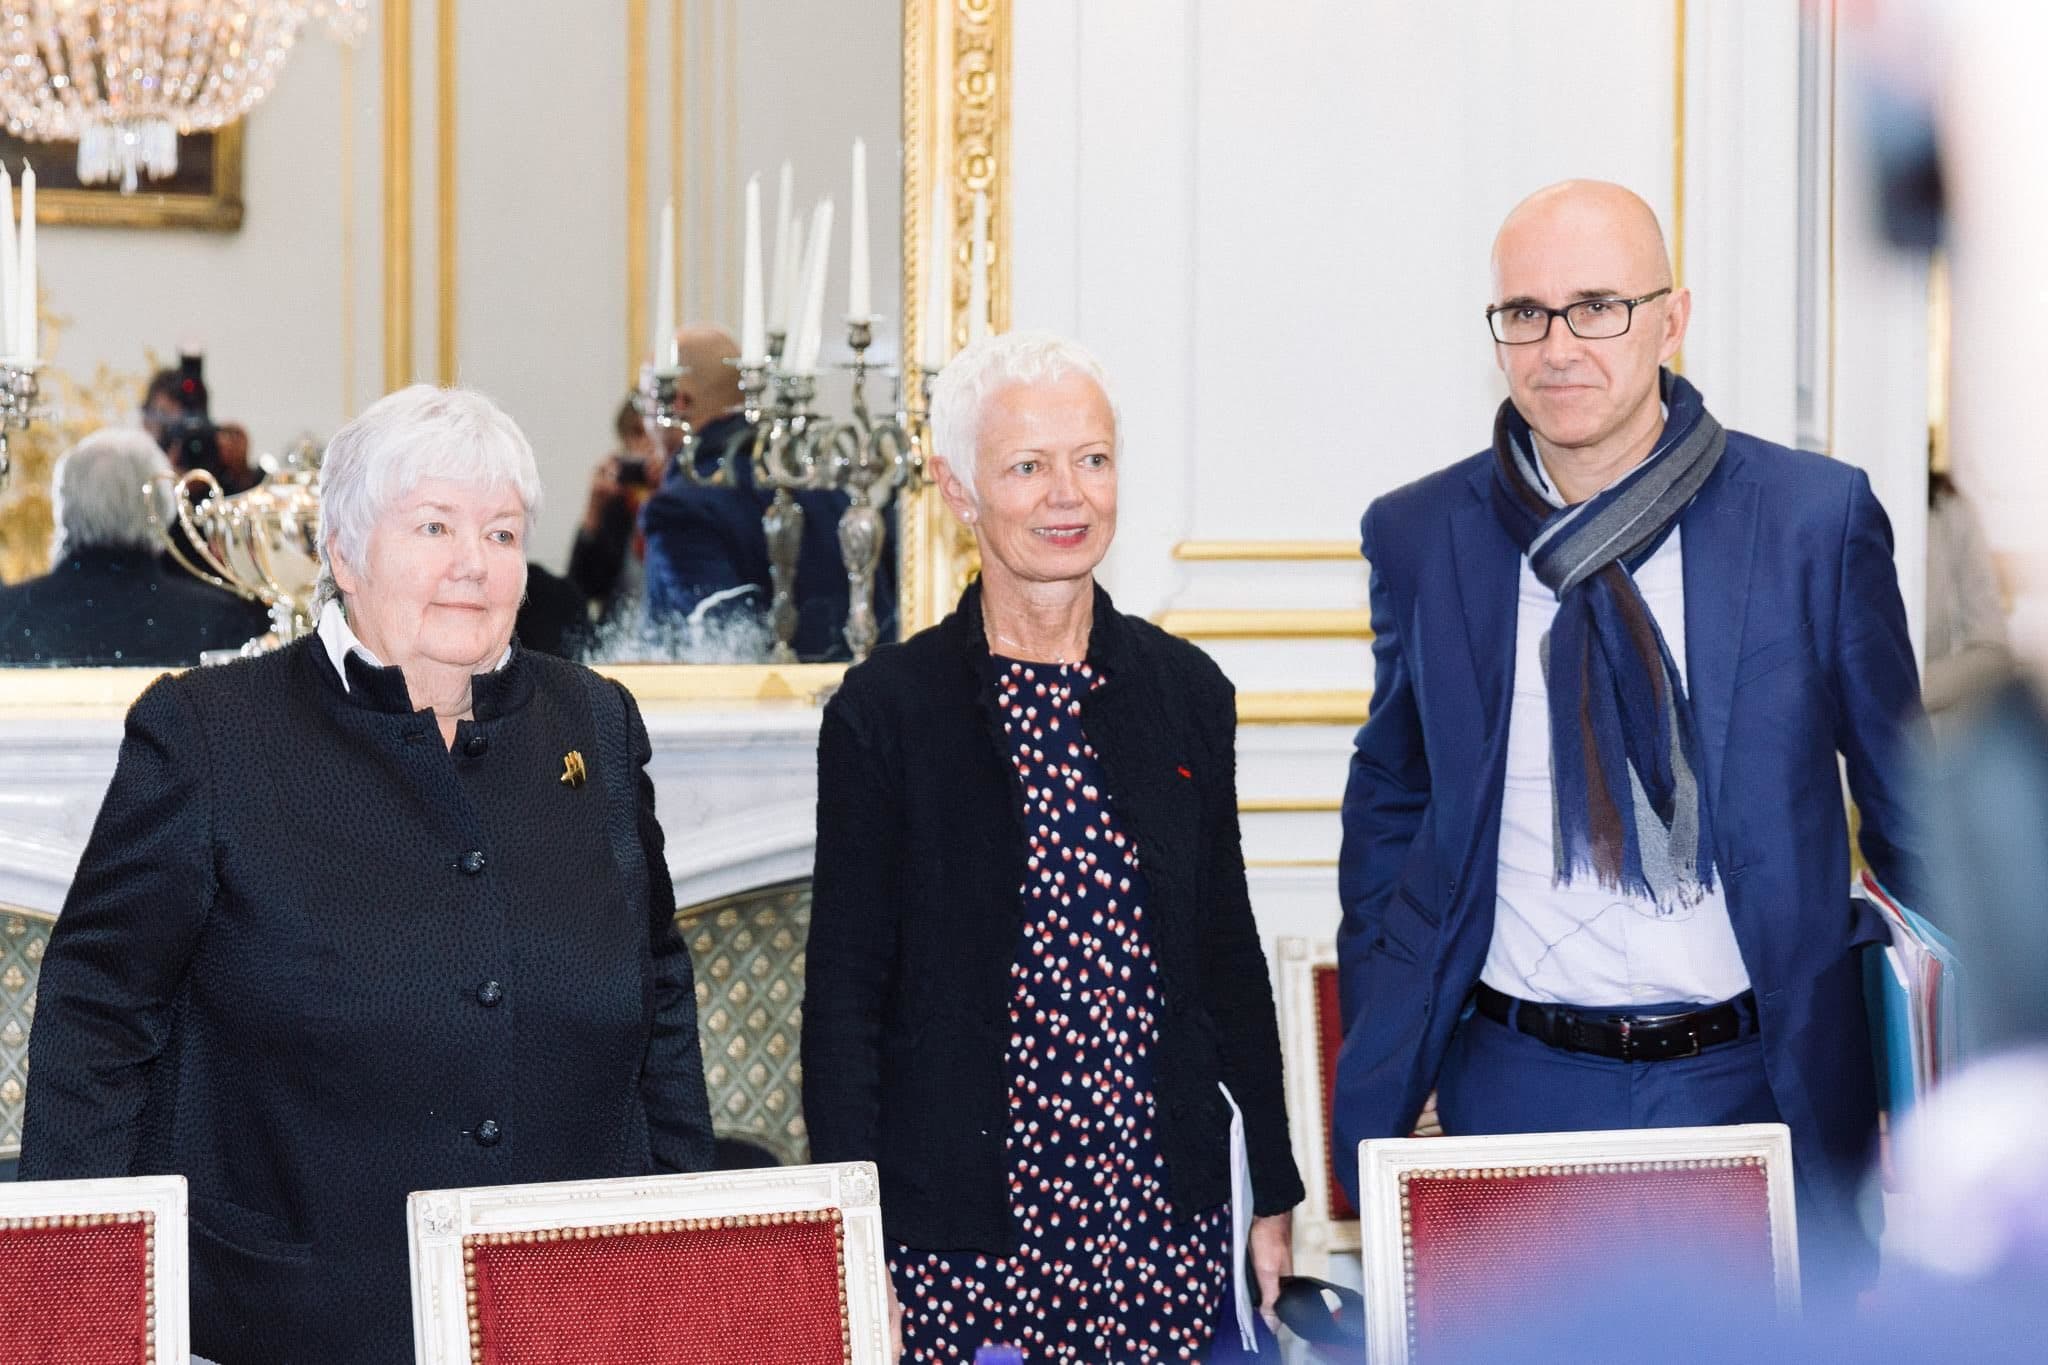 Le Conseil d'État propose de détrictoter beaucoup de pouvoirs obtenus par Brigitte Klinkert et Frédéric Bierry (au centre et à droite) auprès de la ministre Jacqueline Gourault. (Photo Abdesslam Mirdass)